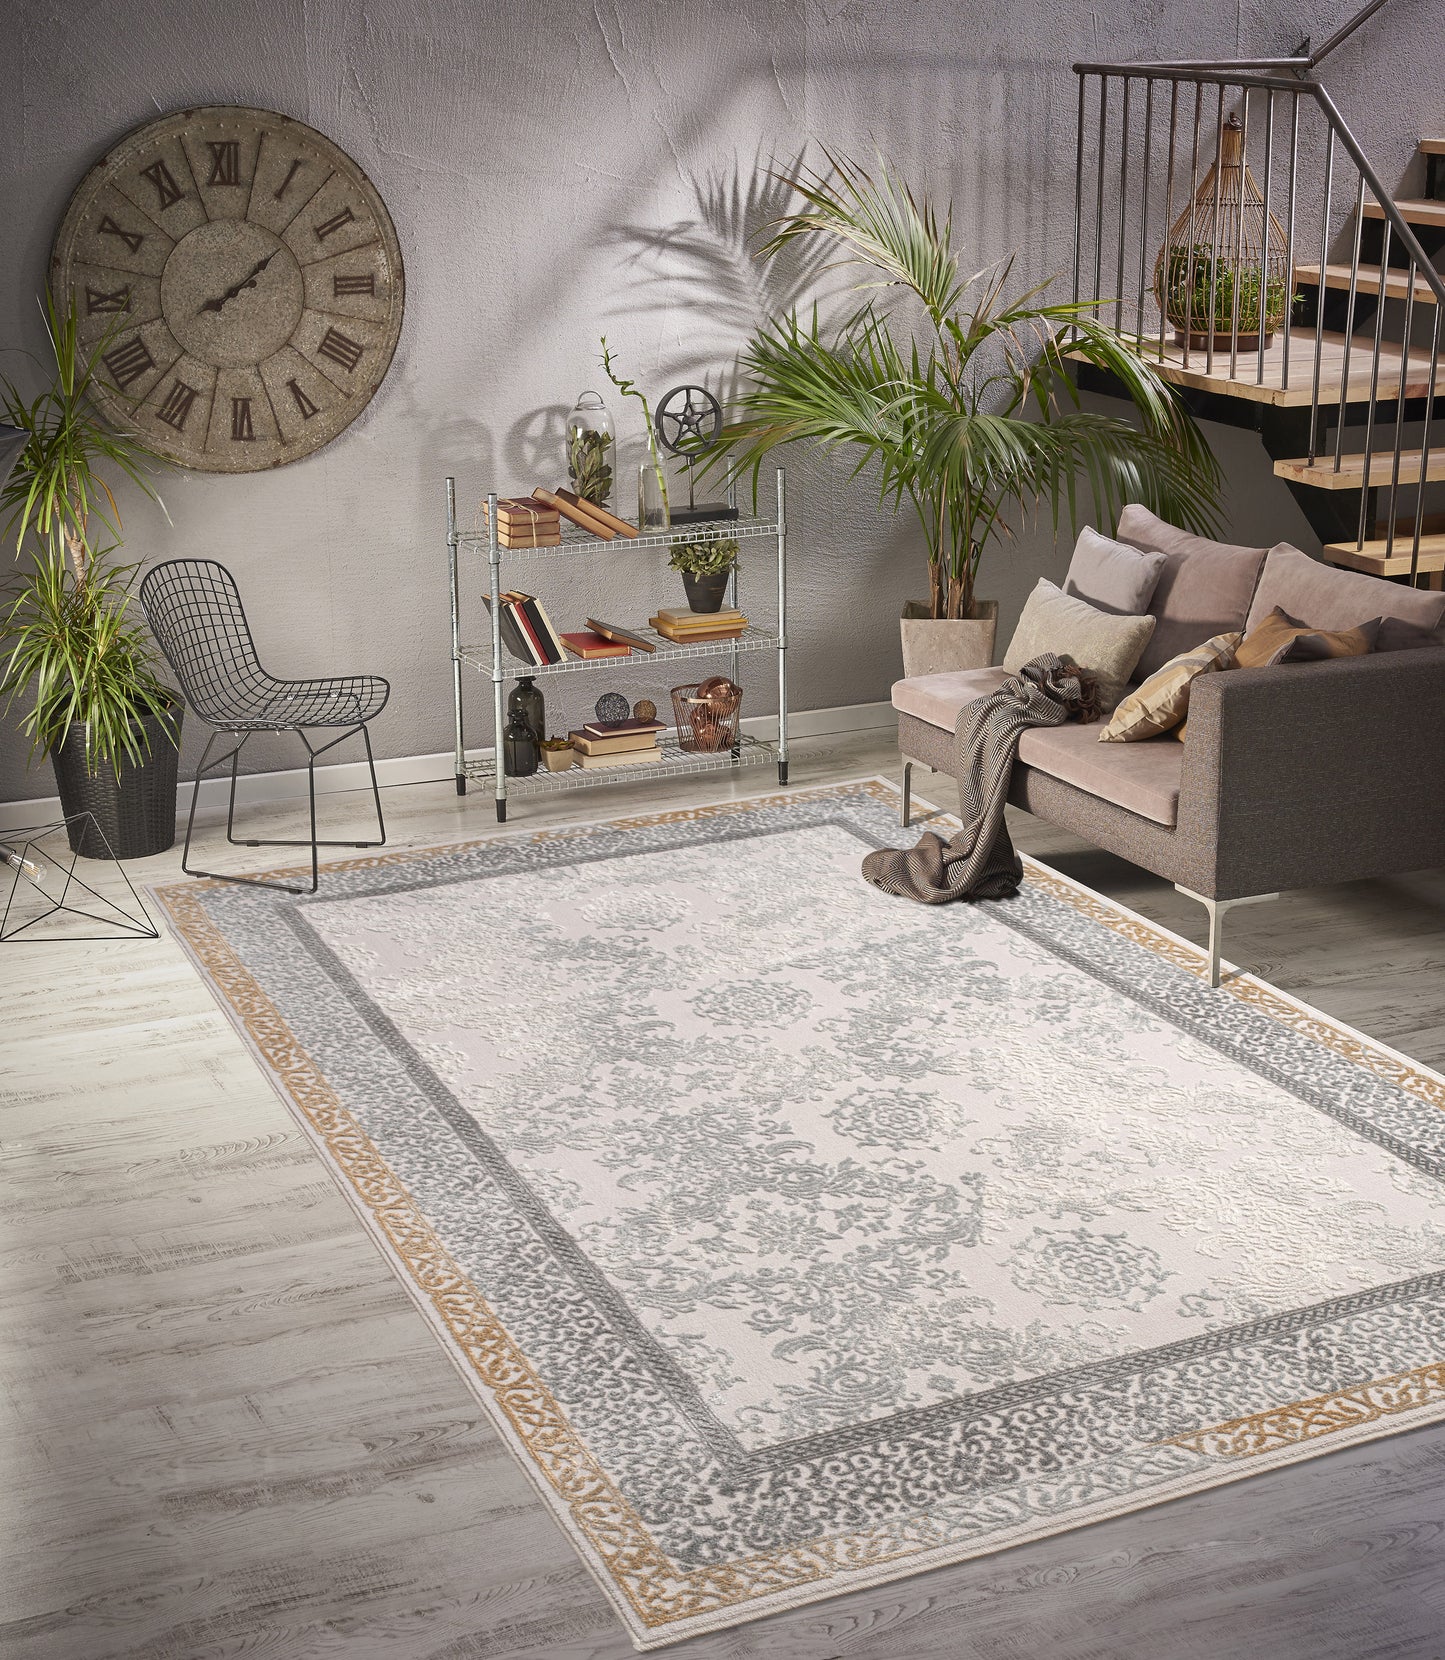 ivory beige ikat traditional living room area rug 8x10, 8x11 ft Large Living Room Carpet, Bedroom, Kitchen